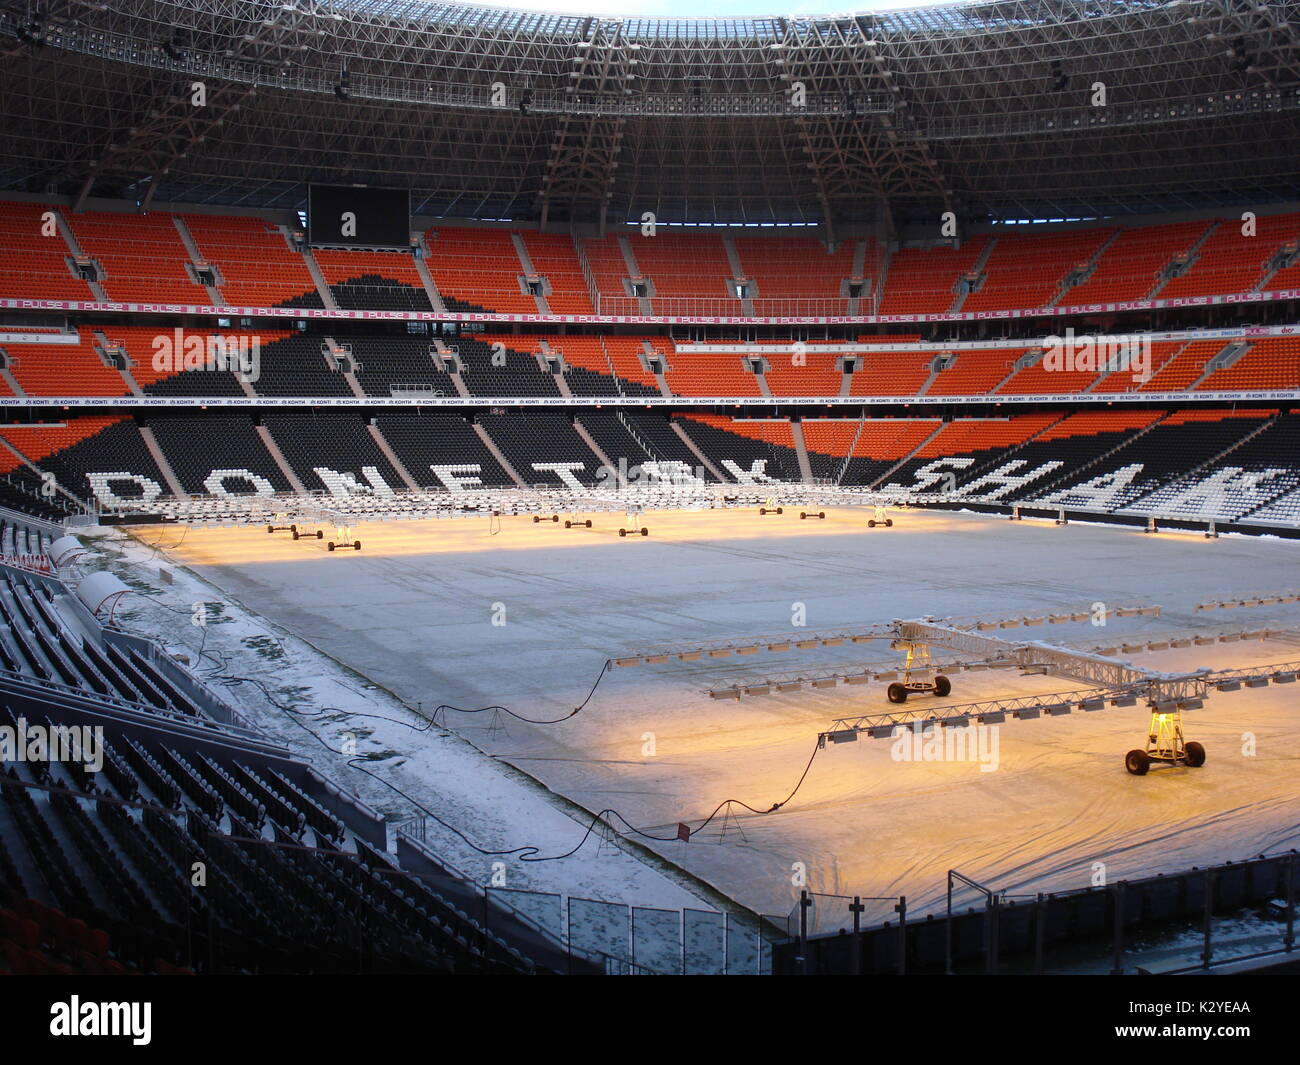 Tout nouveau stade de Donetsk, la Donbass Arena, a été utilisé par l'équipe de football Shakhtior avant la guerre. Le champ est chauffée en hiver Banque D'Images